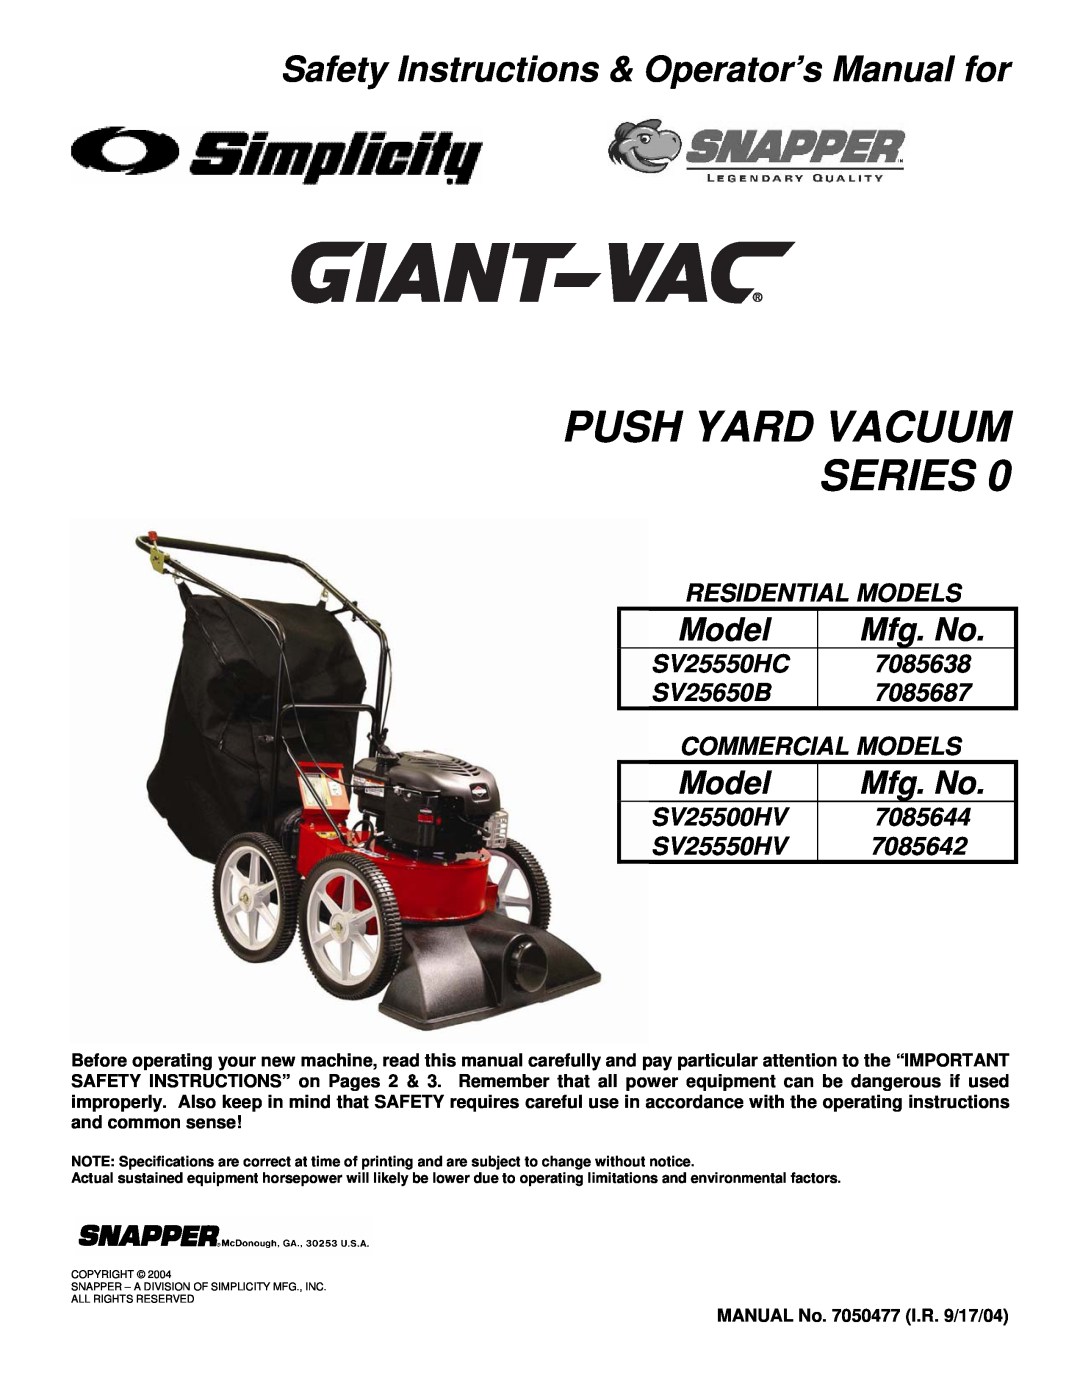 Snapper SV25500HV, ESV25550HV, SV25550HC, SV25650B important safety instructions Push Yard Vacuum Series, Model, Mfg. No 